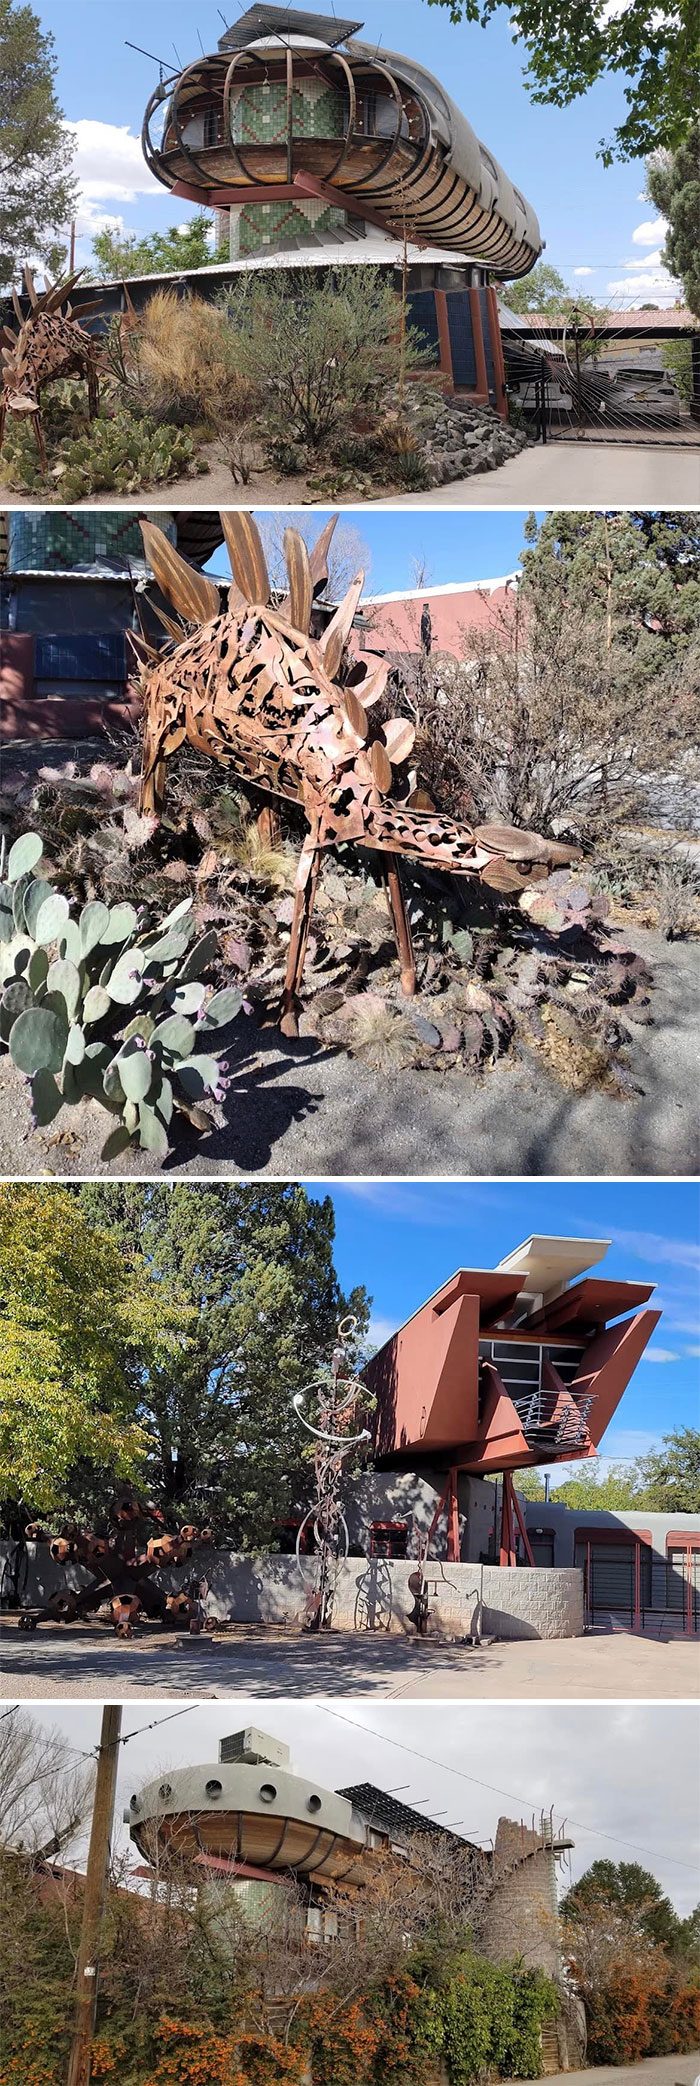 ¿Qué opinan de estas casas OVNI en Albuquerque, Nuevo México?